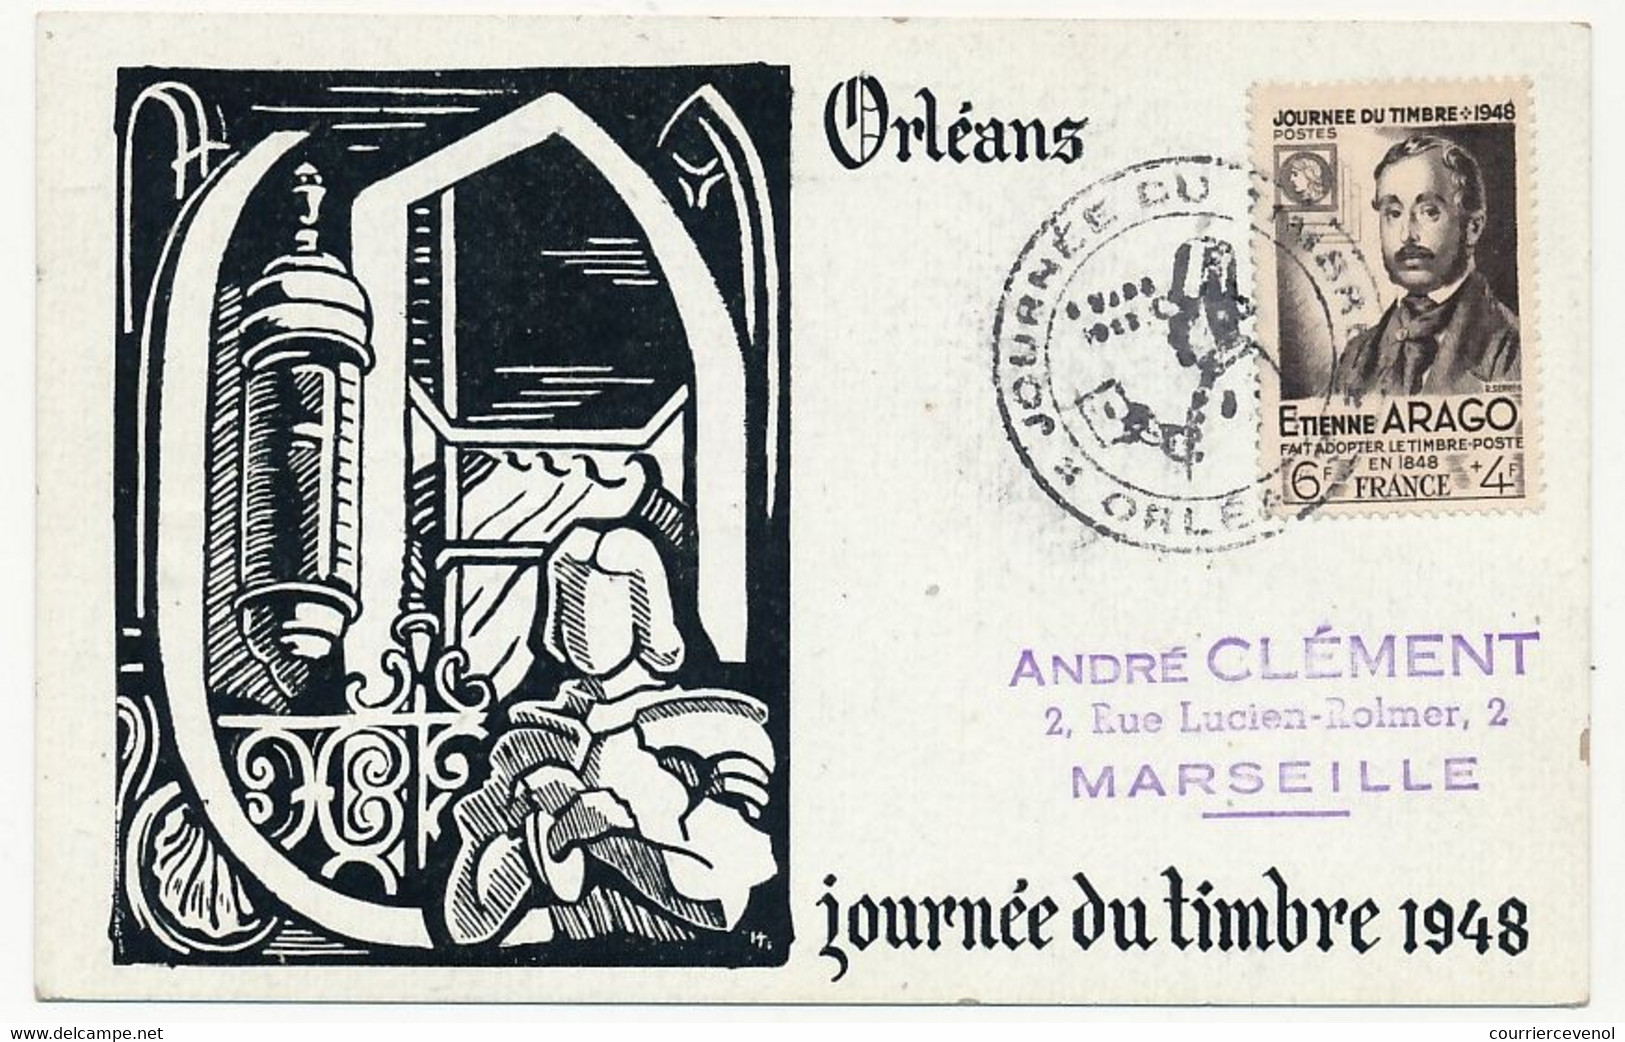 FRANCE => Carte Locale "Journée Du Timbre" 1948 - Timbre 6F + 4F Etienne Arago - ORLEANS 8.3.1948 - Día Del Sello